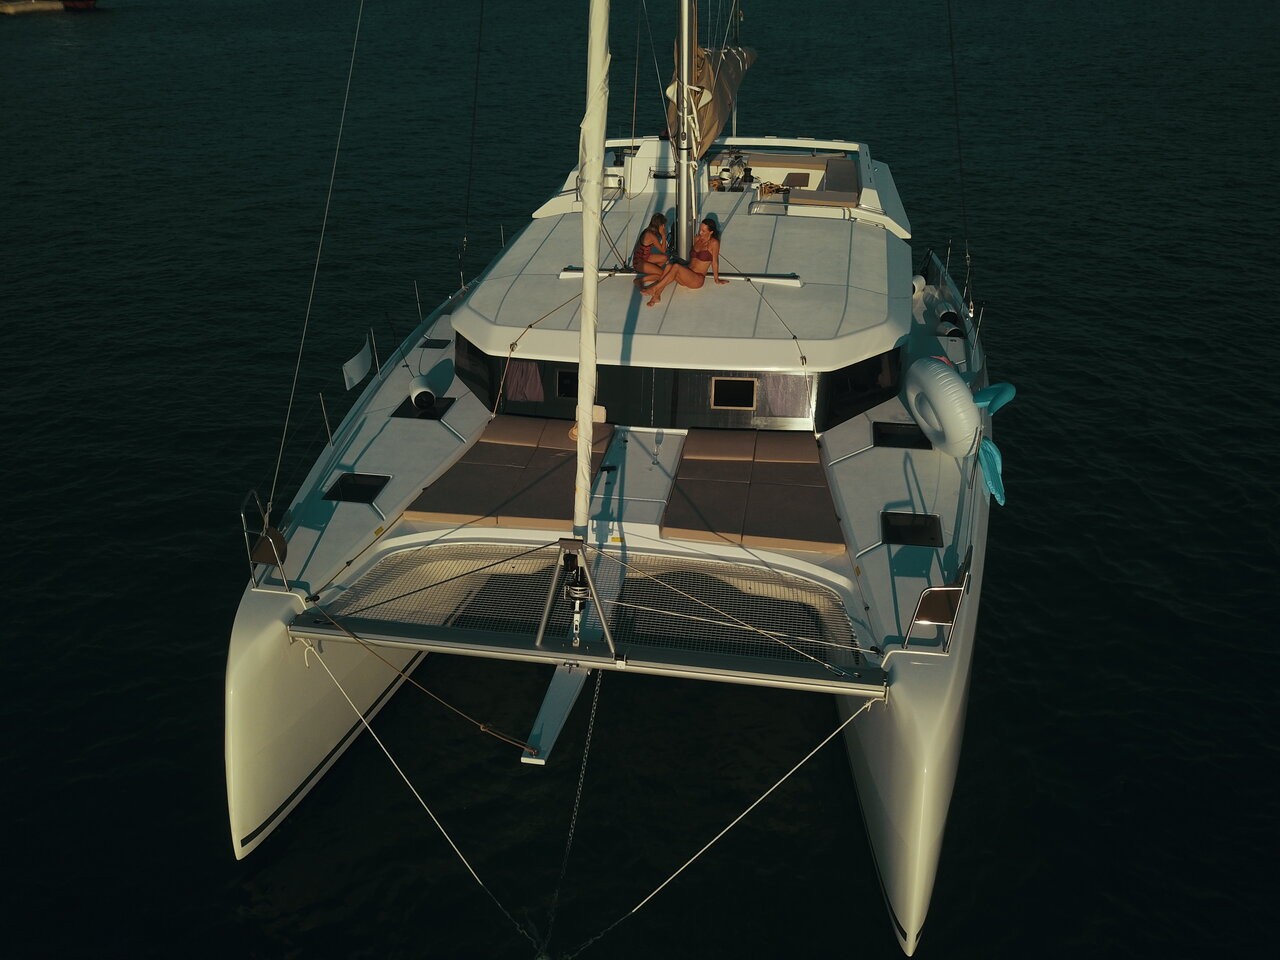 Dufour 48 Catamaran, Seaven